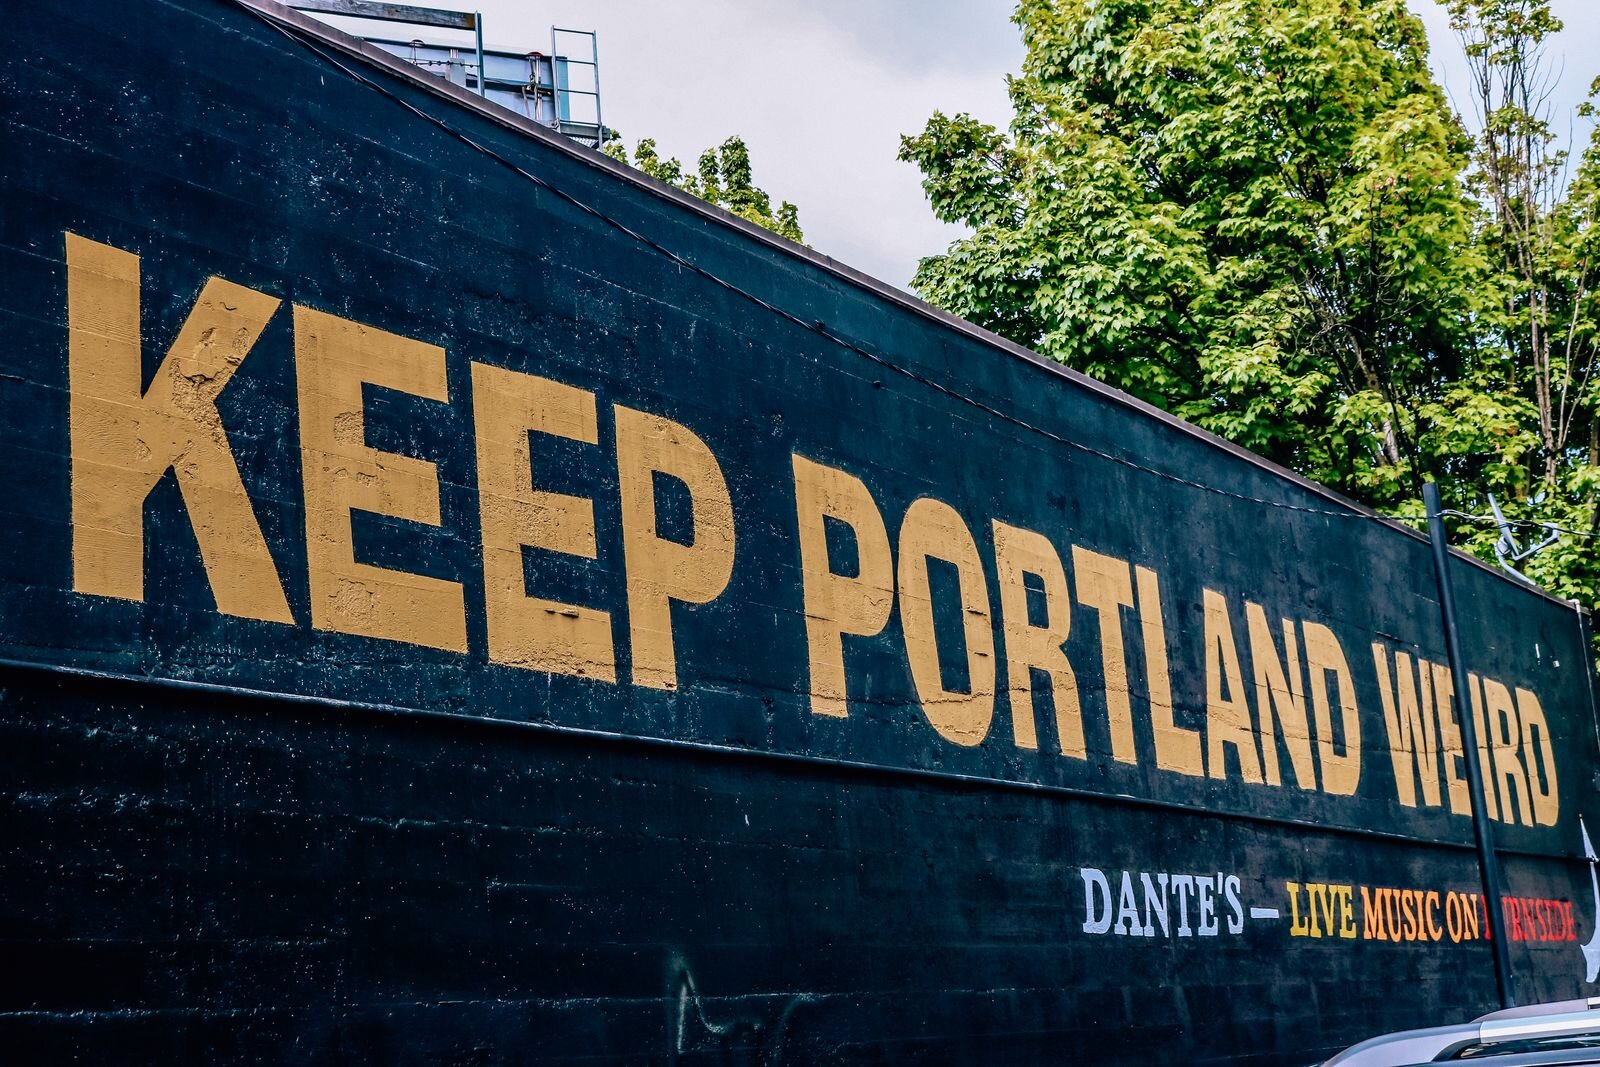 Keep Portland weird sign